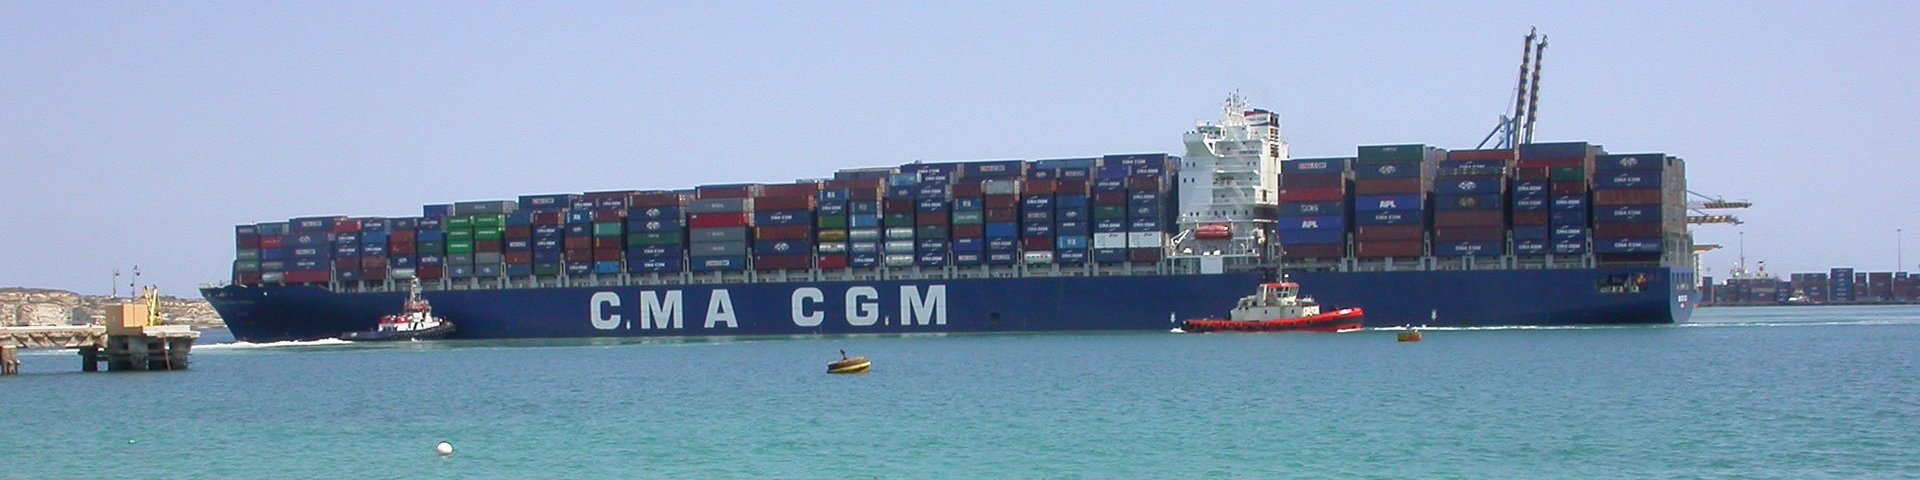 Frachtschiff CMA CGM Tosca im Hafen von Malta